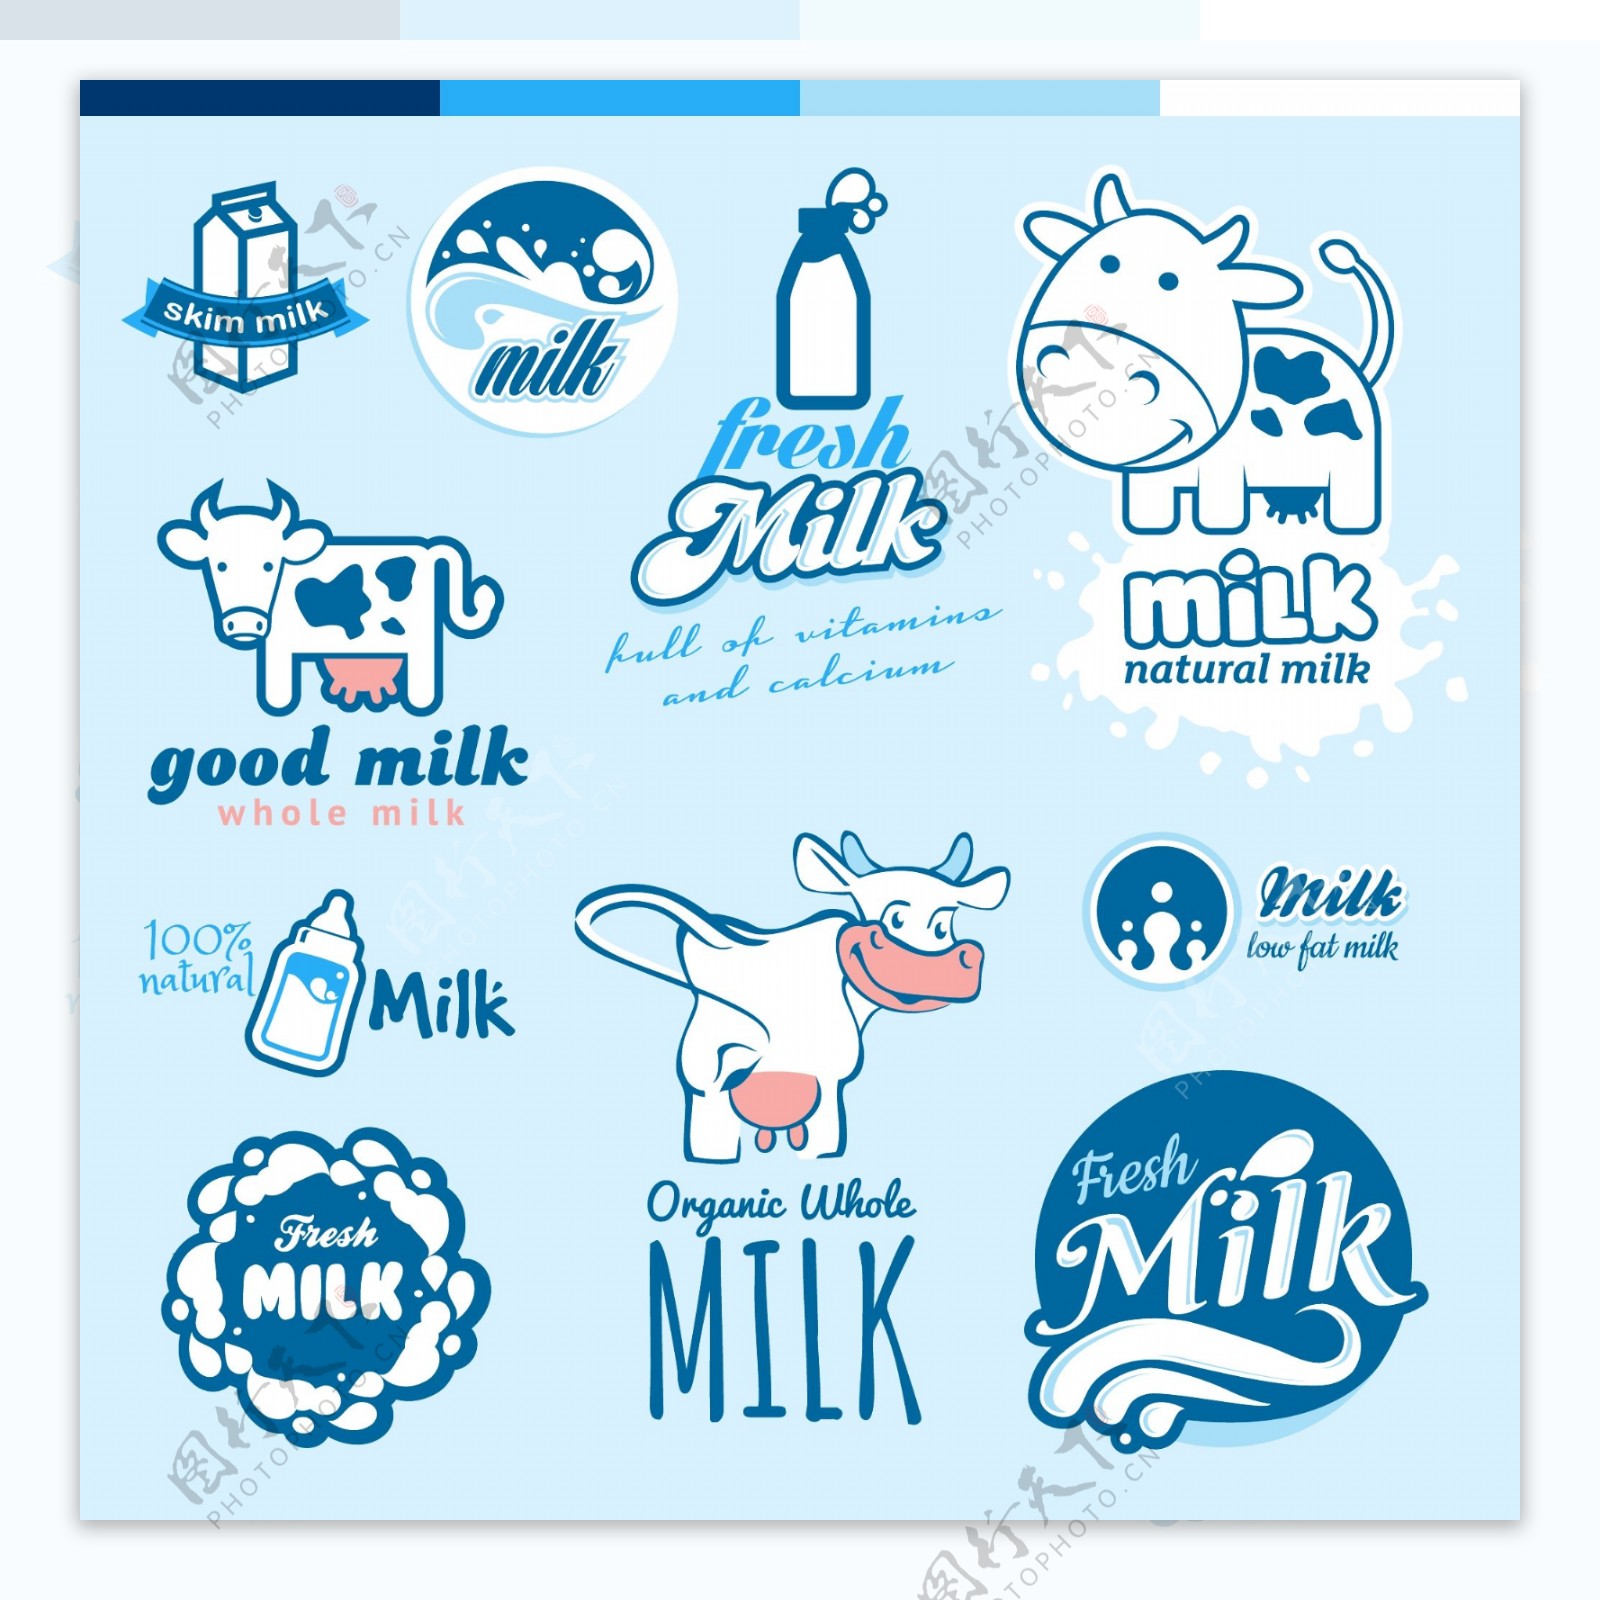 牛奶商标图片